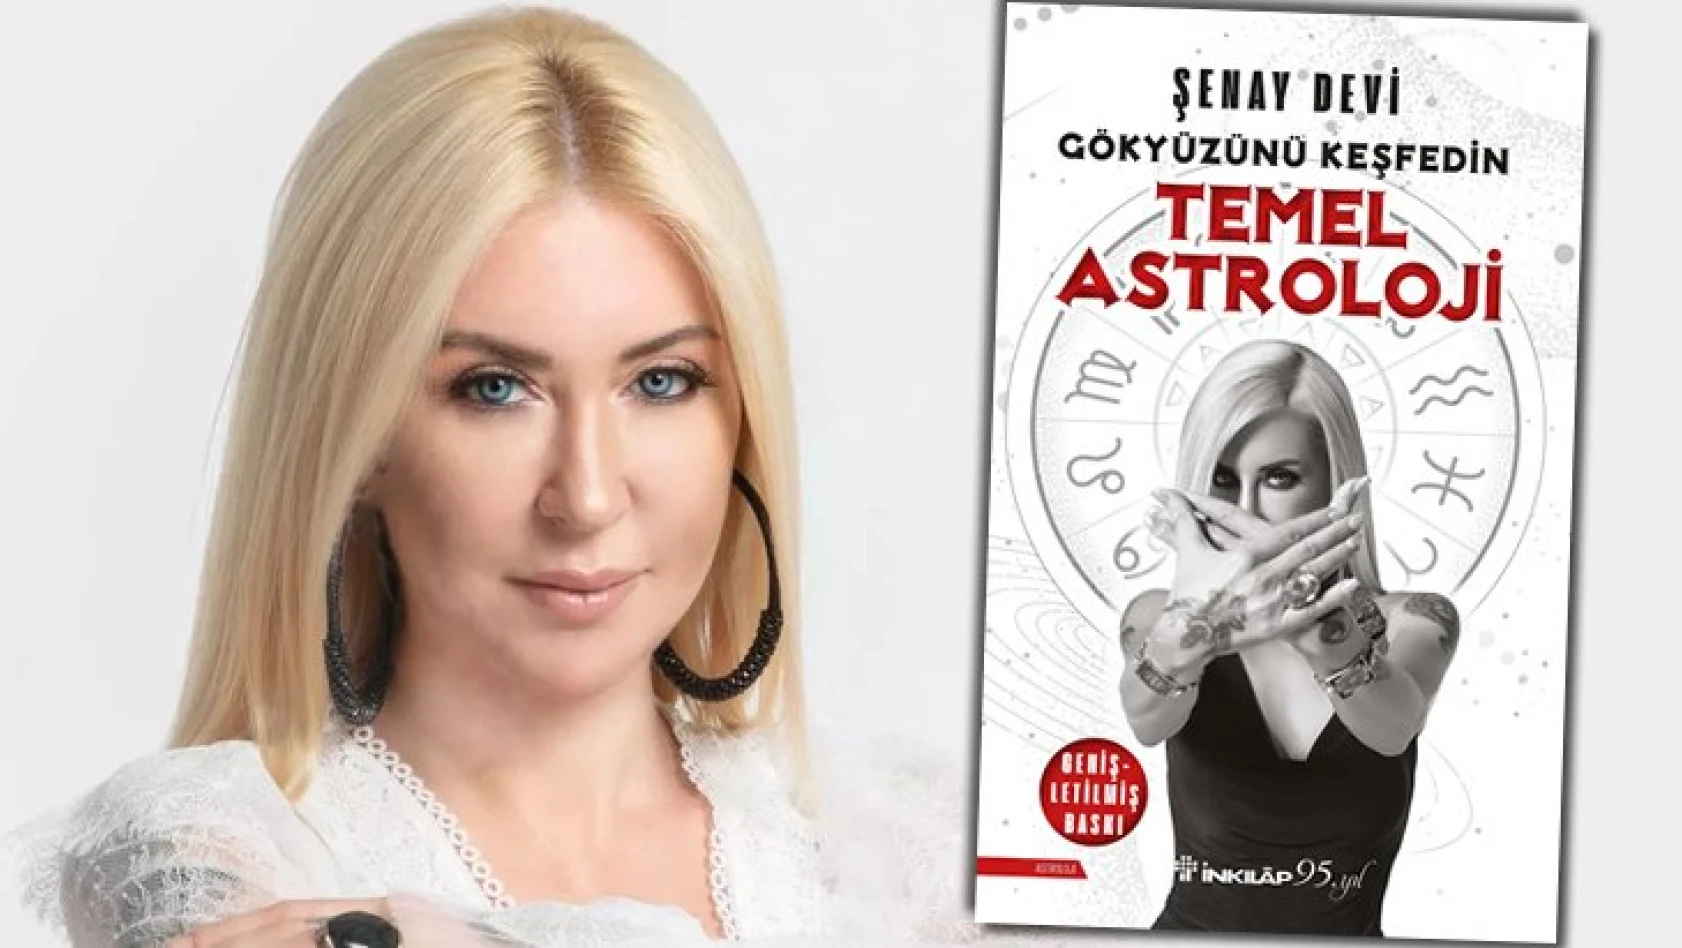 Dr. Astrolog Şenay Devi'nin yeni ve ufuk açıcı kitabı 'Temel Astroloji', raflardaki yerini aldı